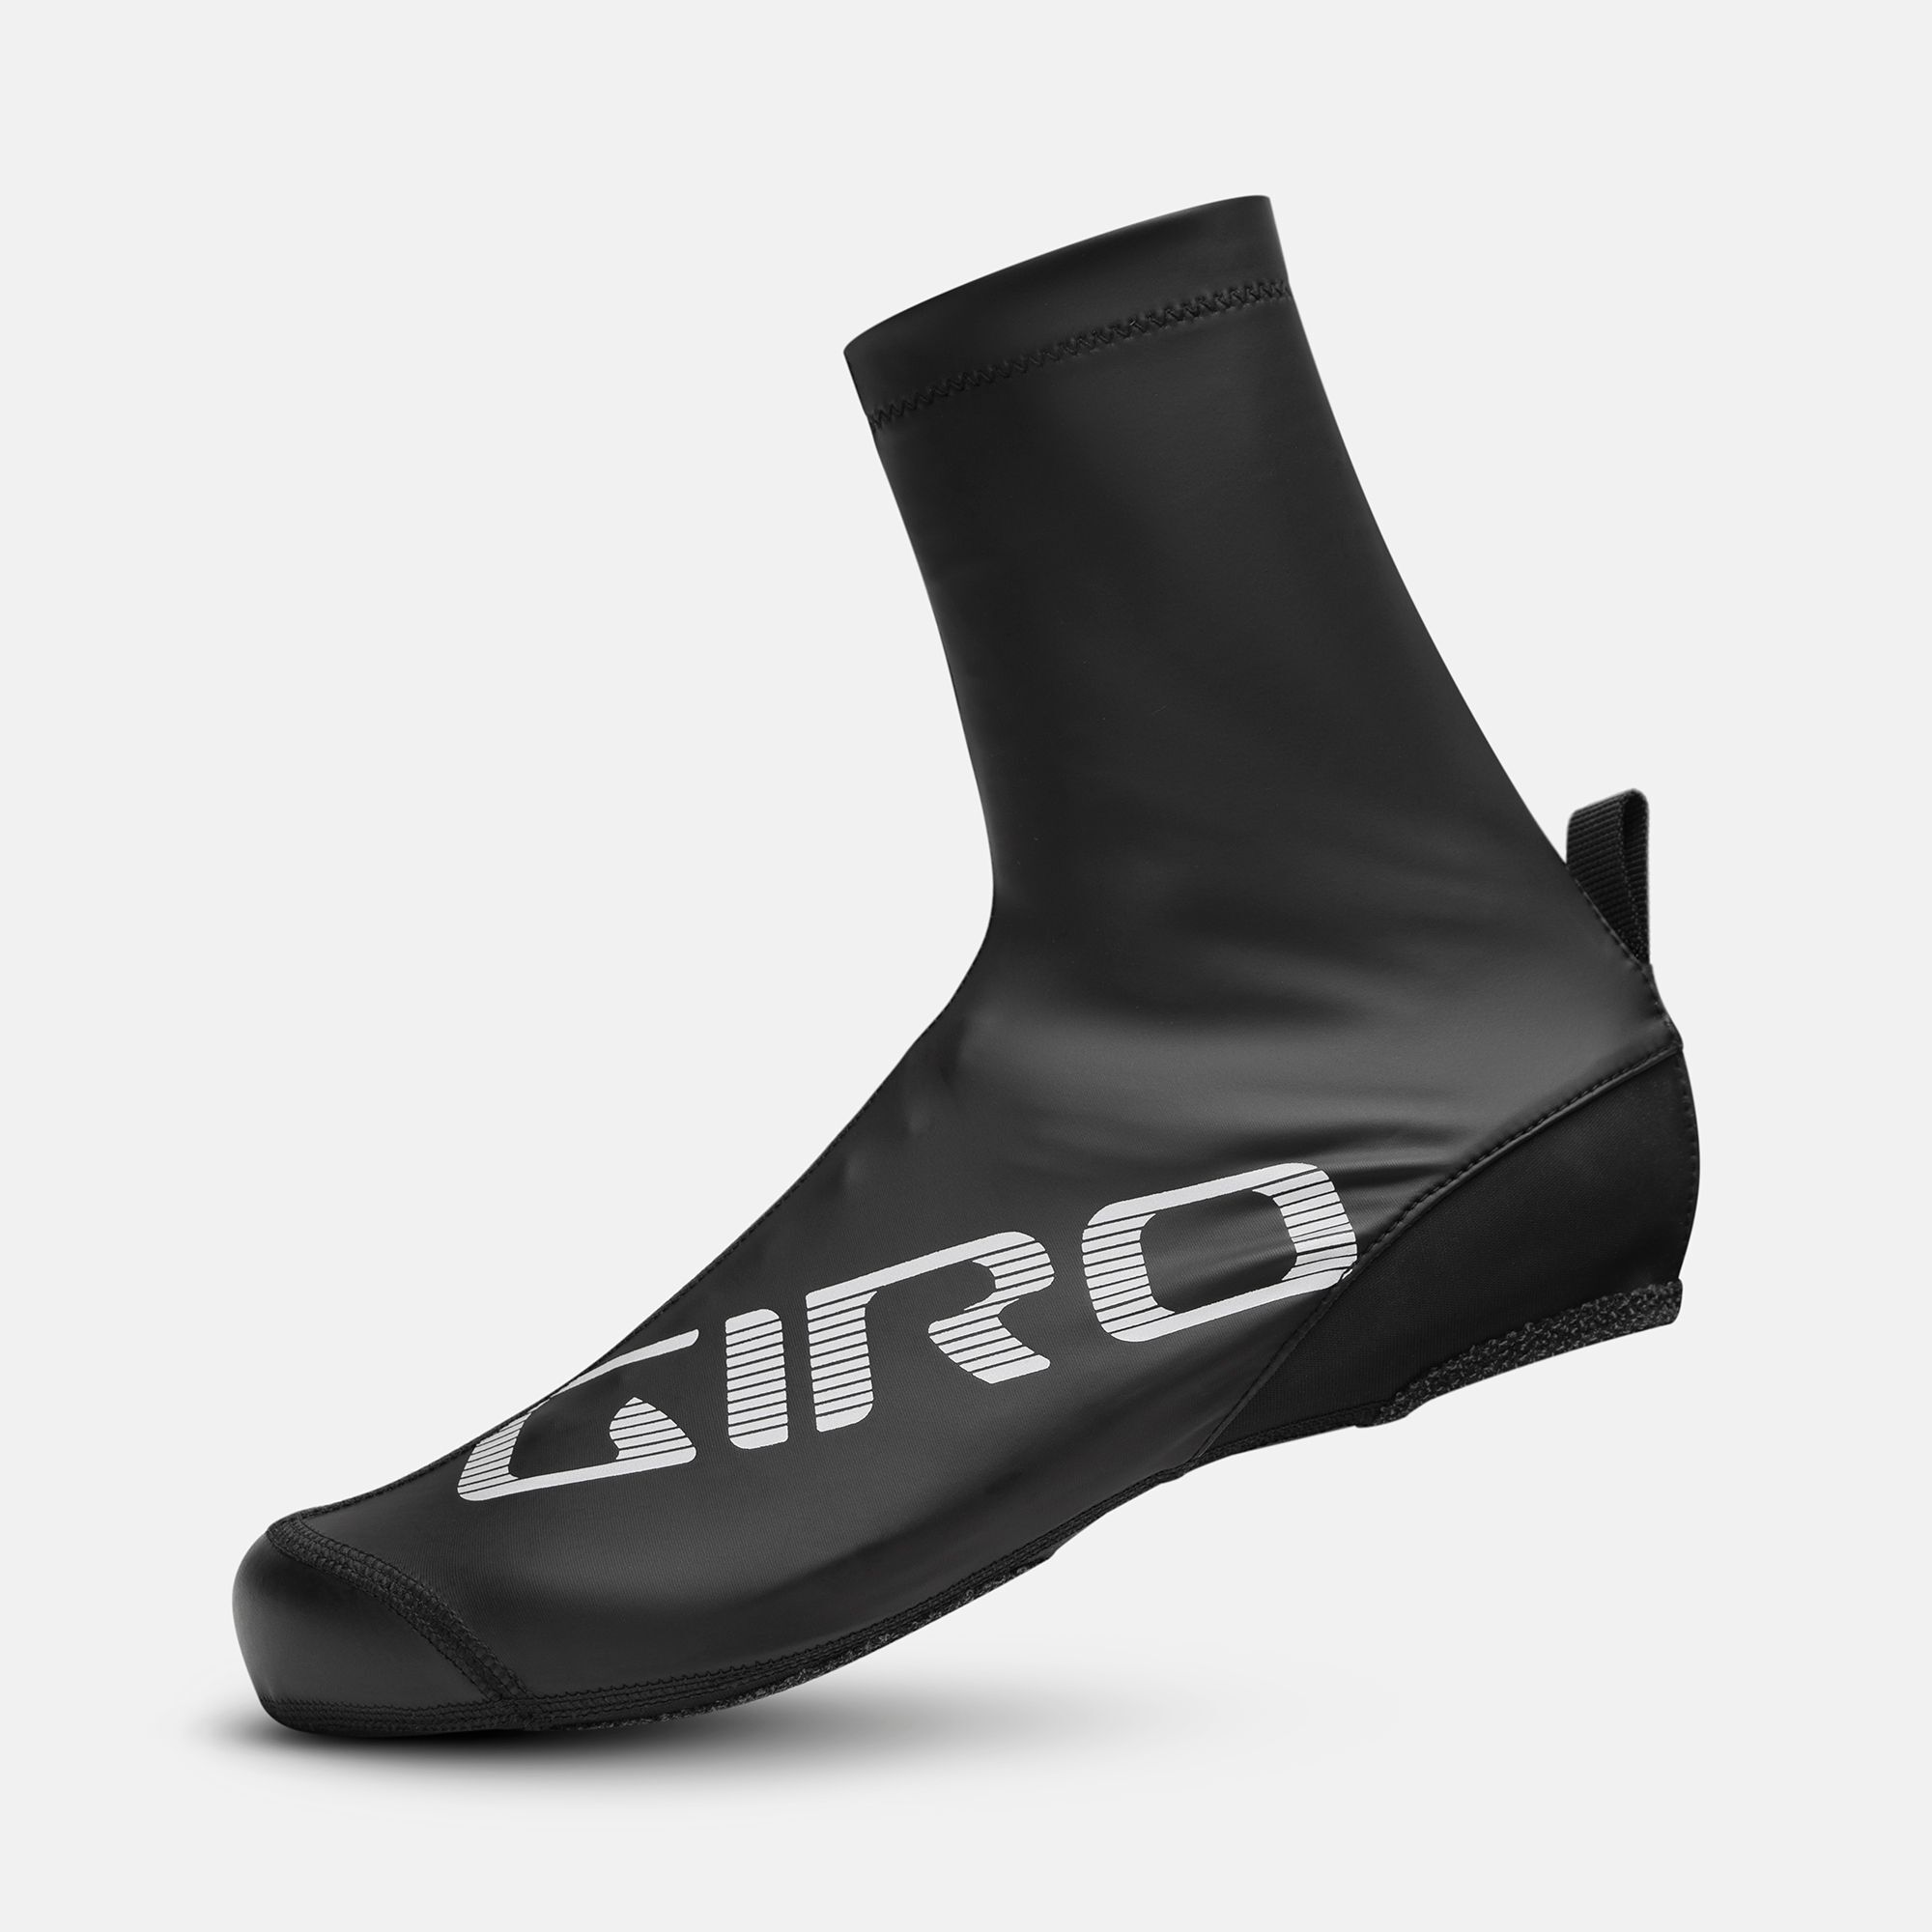 Proof 2.0 Winter Shoe Cover | Giro